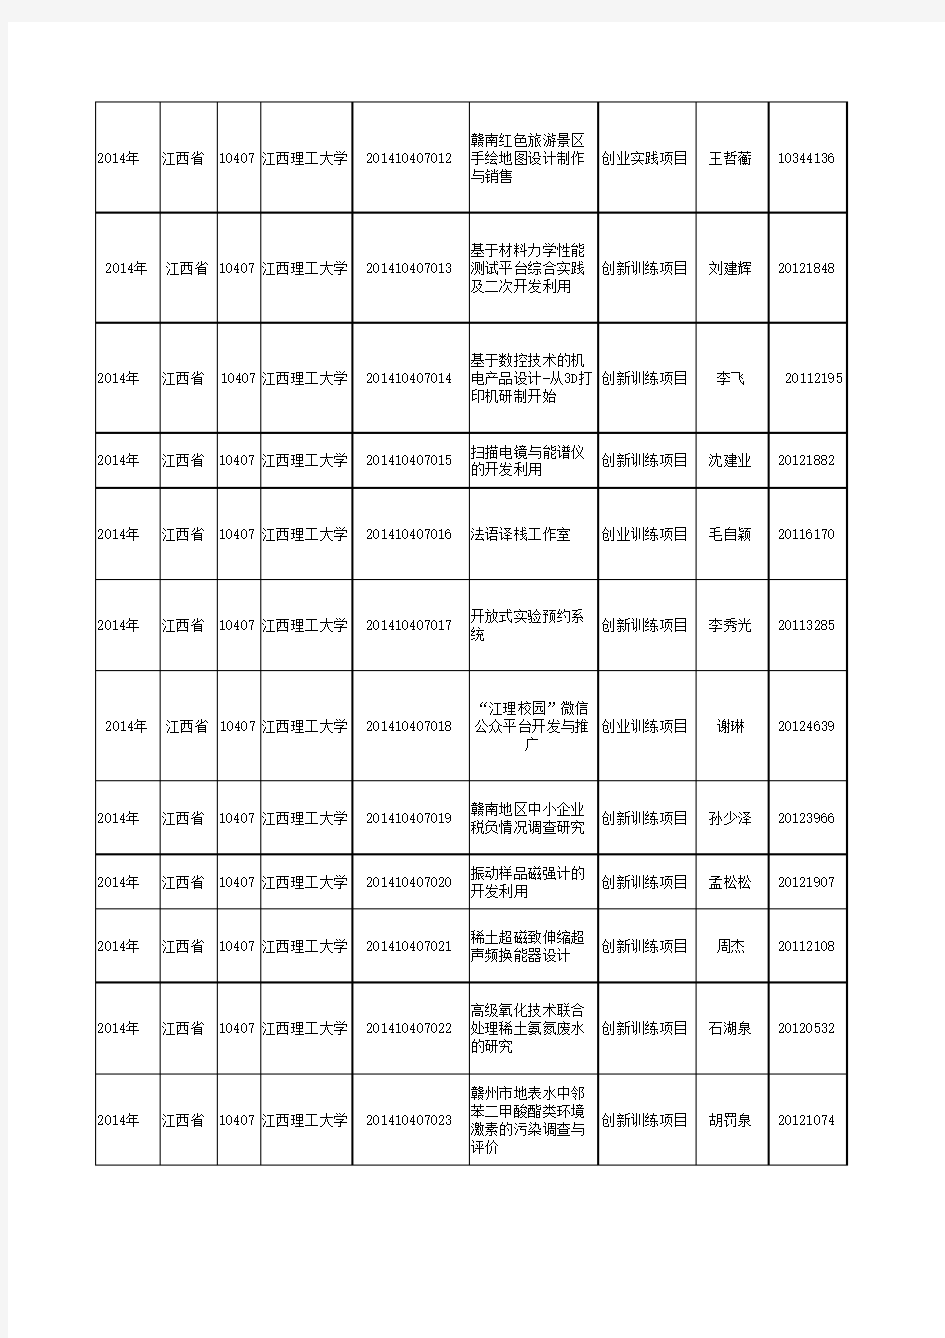 江西理工大学申报大学生创新创业教育计划项目汇总表(2014年)